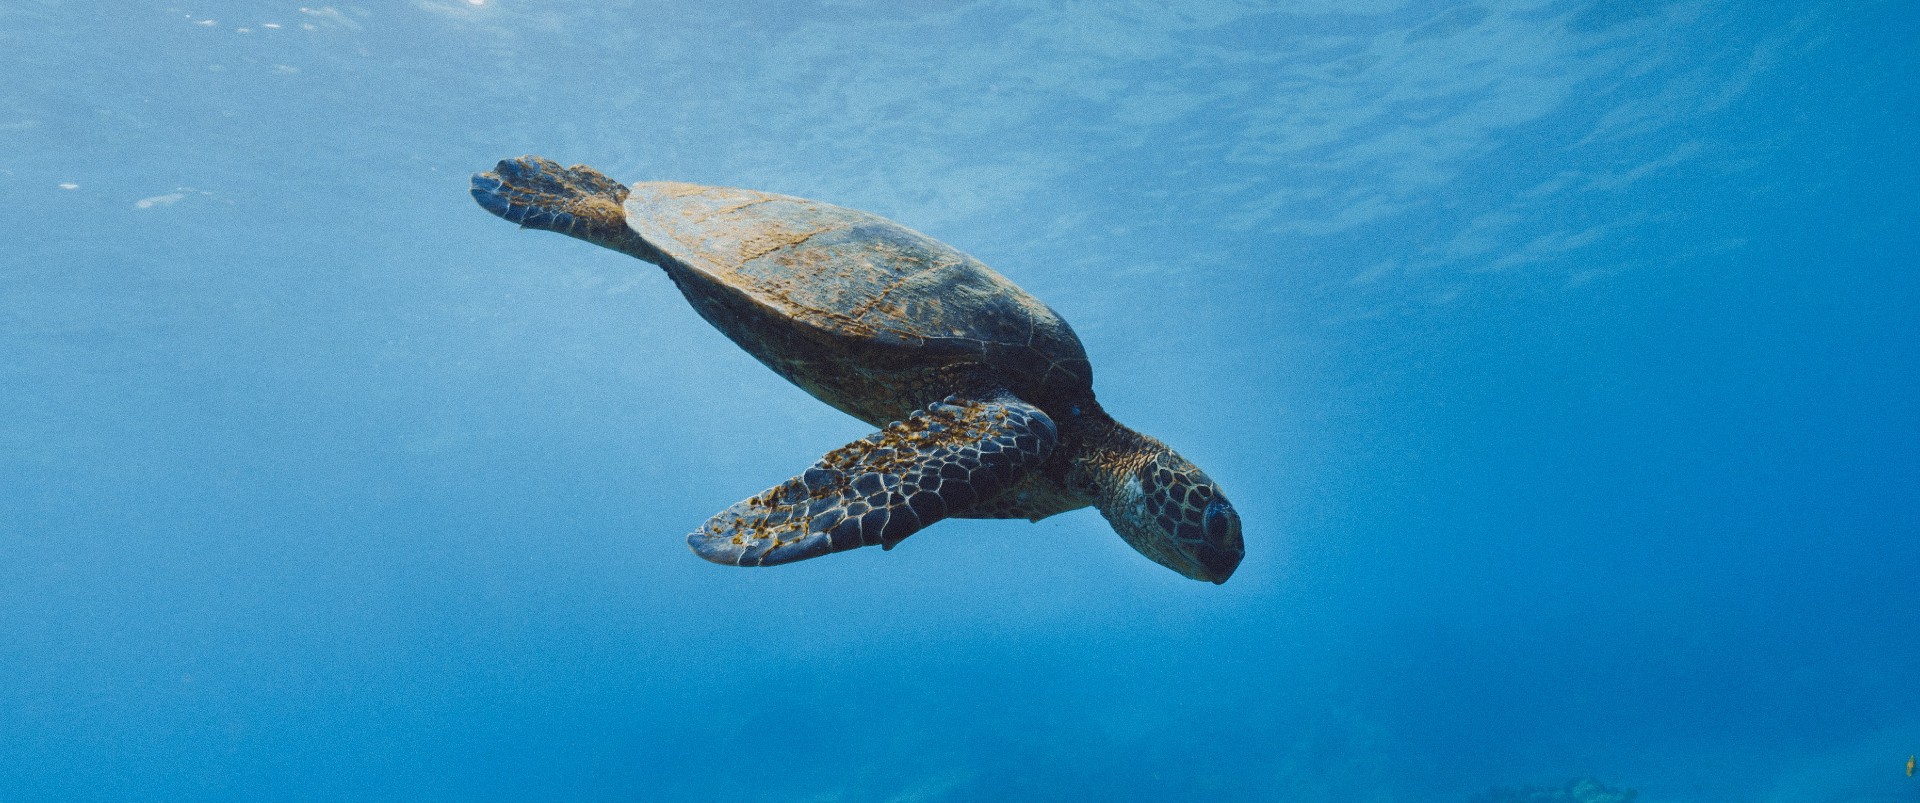 ¿Qué hacer si encuentro una tortuga marina?